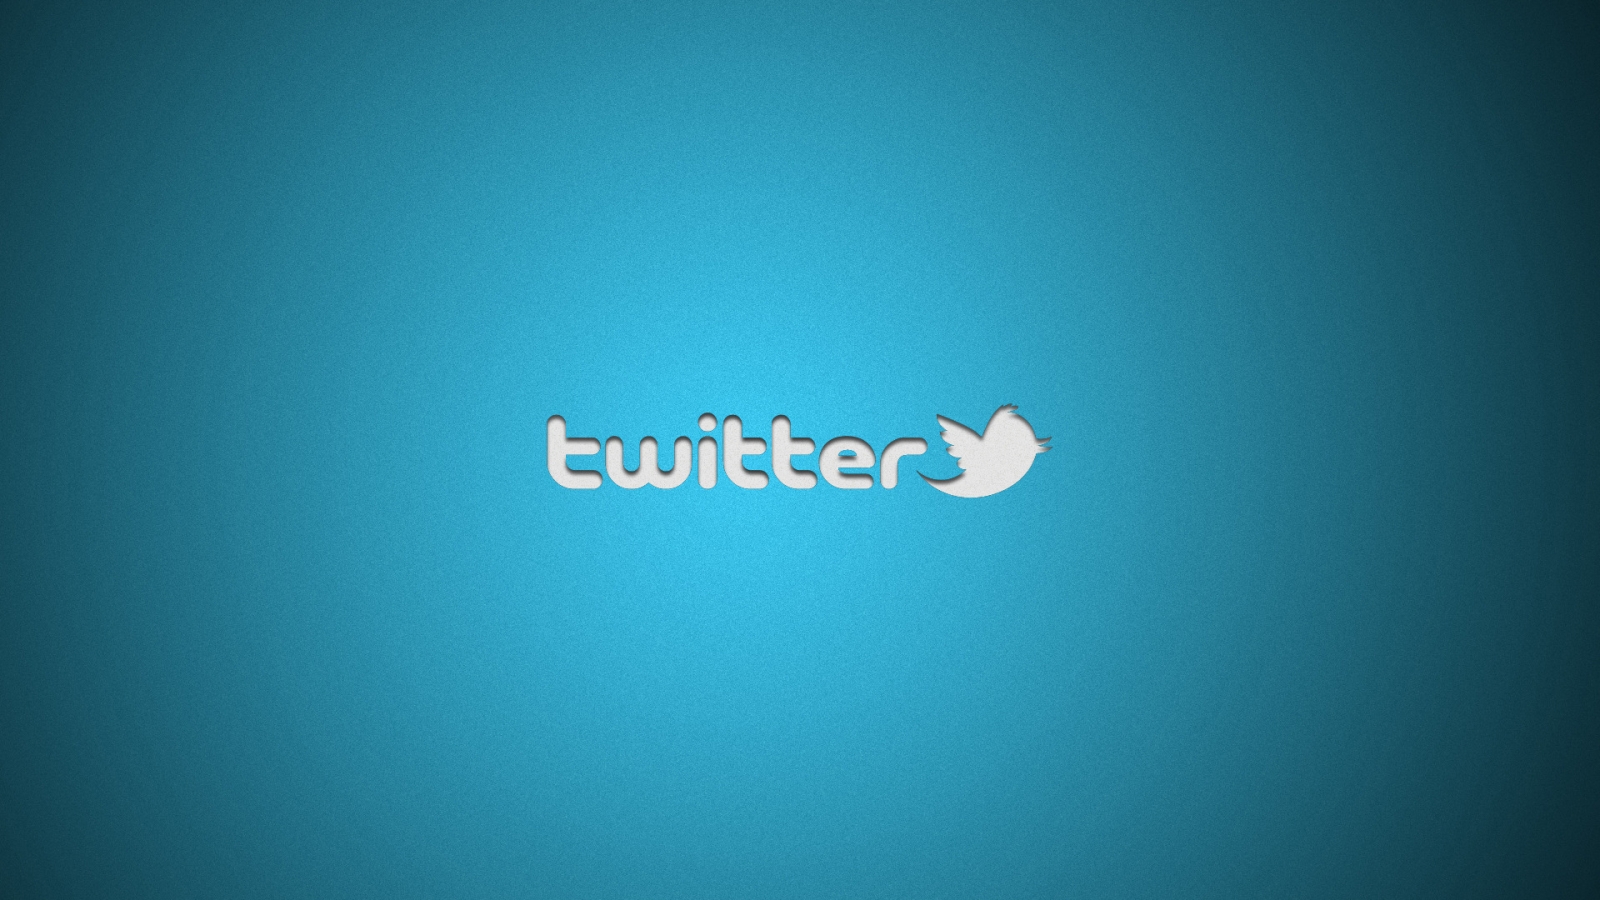 Twitter Logo for 1600 x 900 HDTV resolution